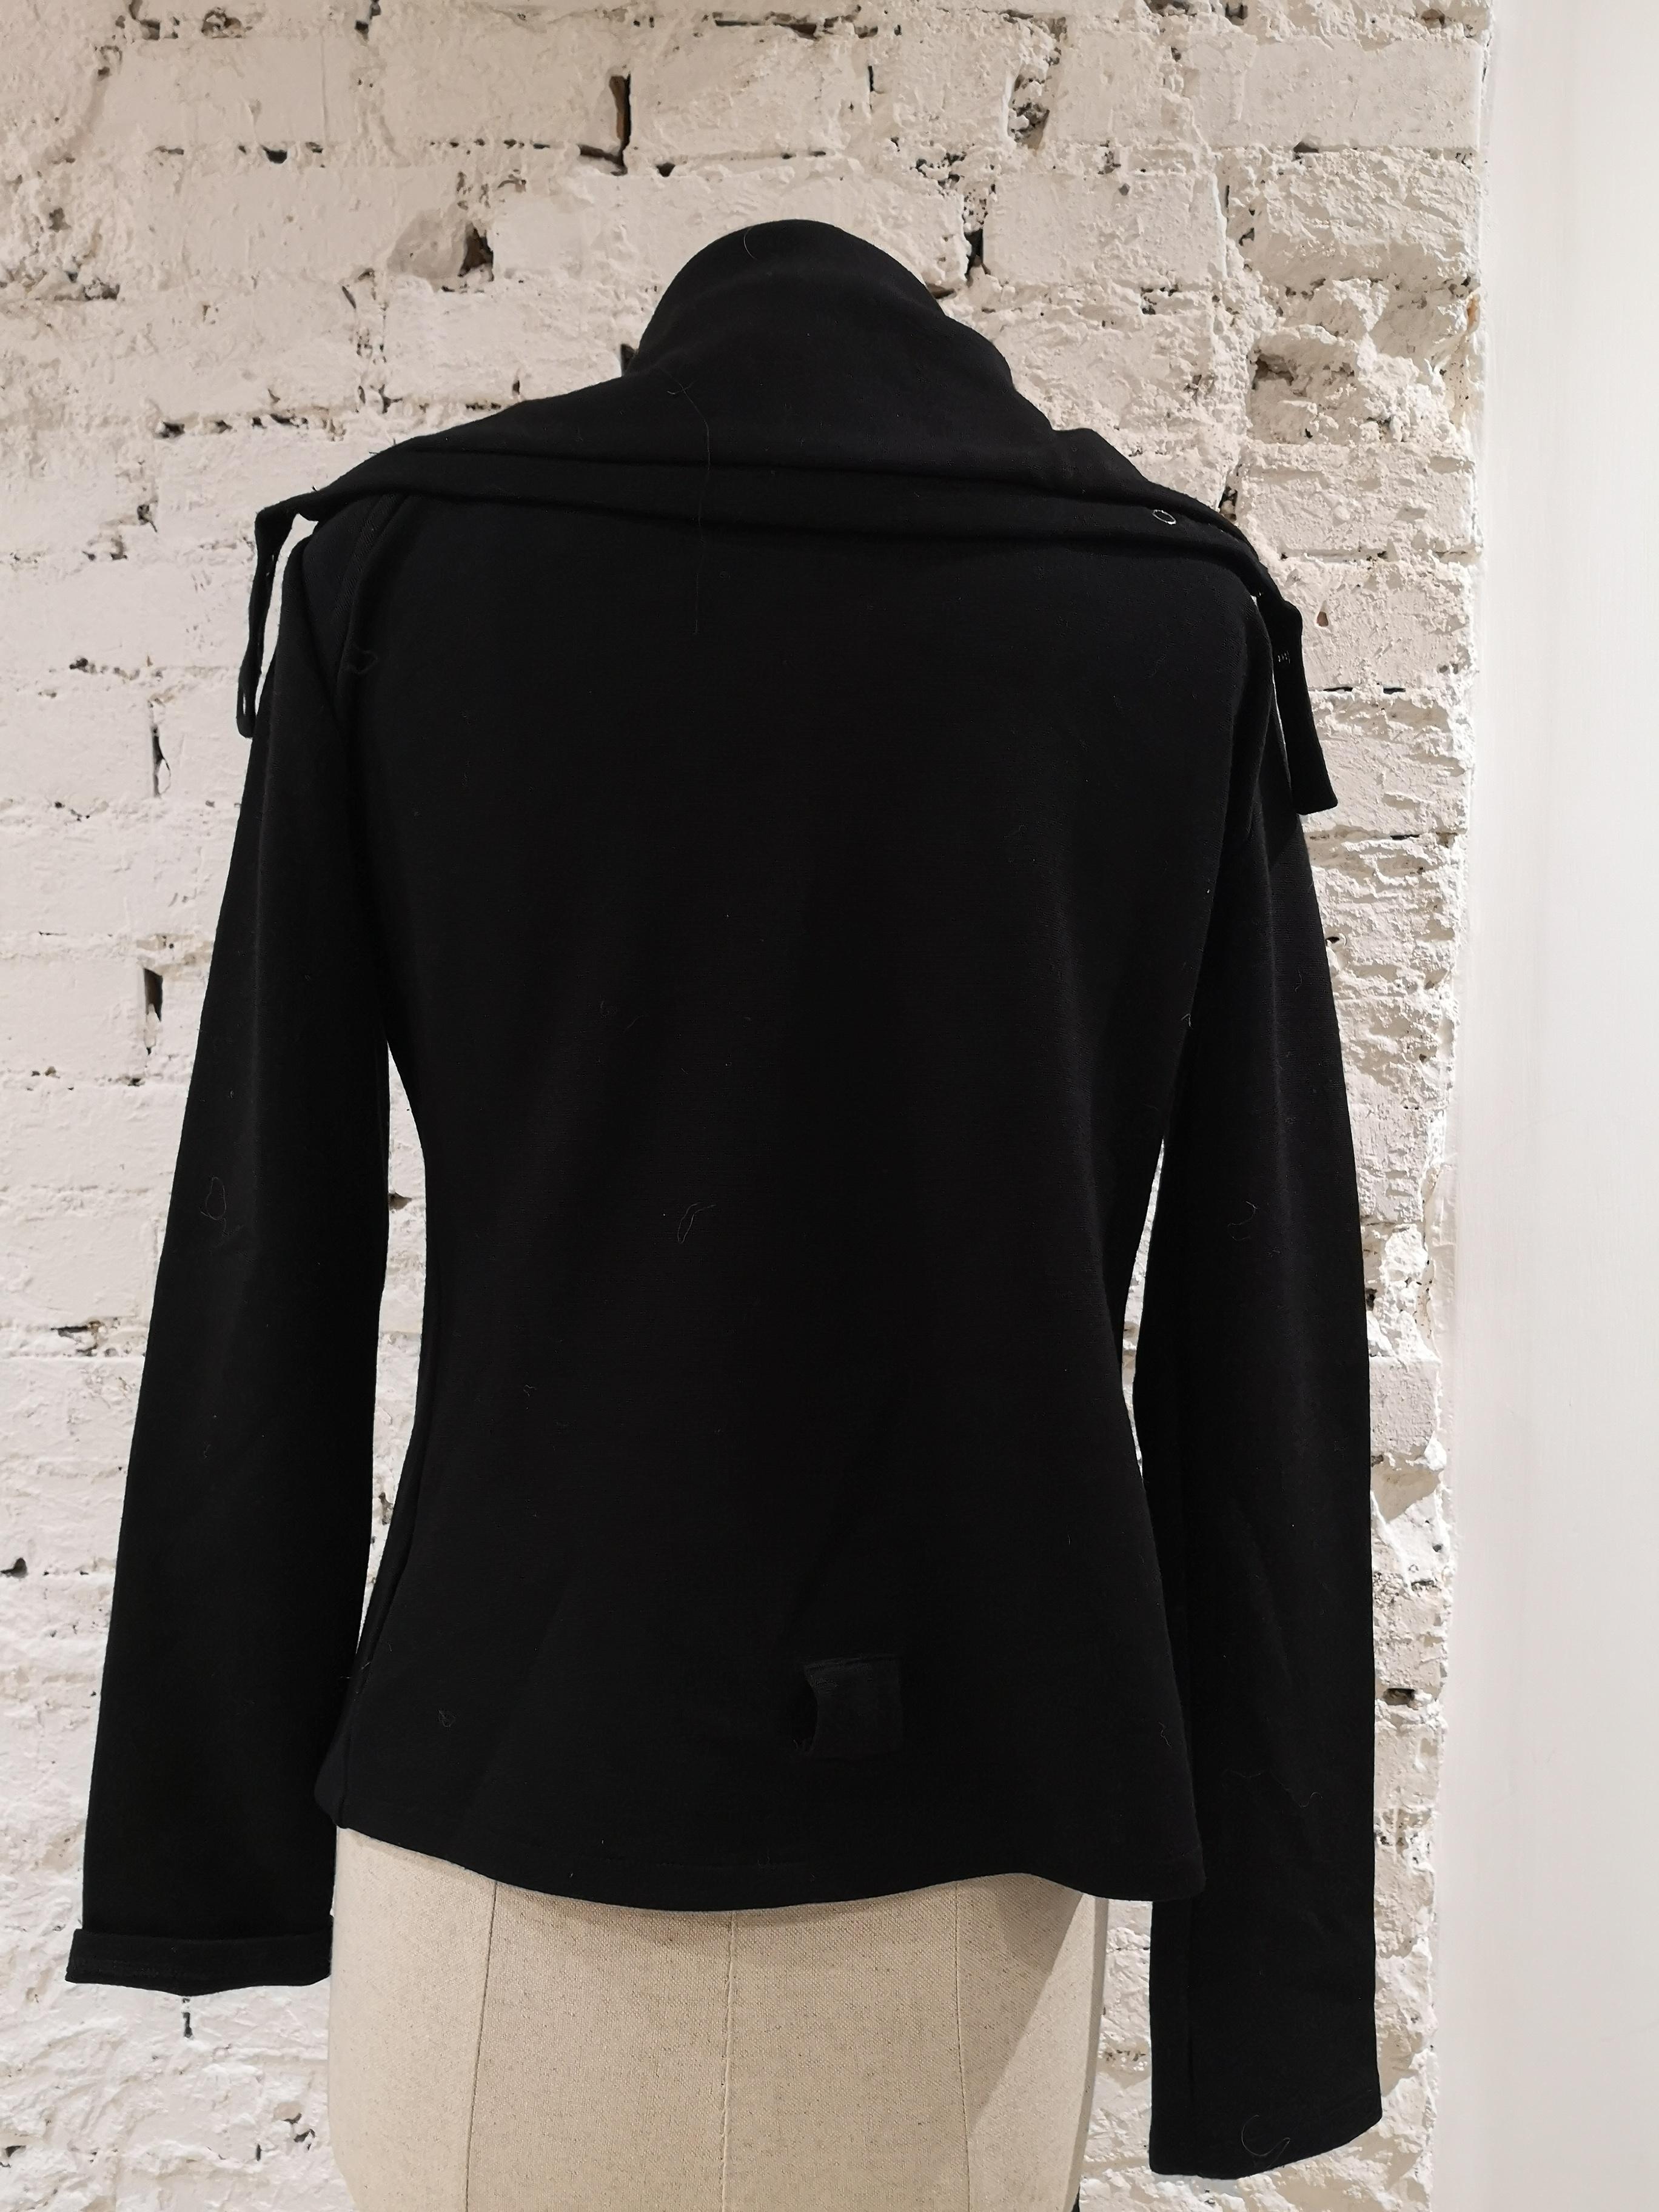 J. C. de Castelbajac black jacket In Excellent Condition For Sale In Capri, IT